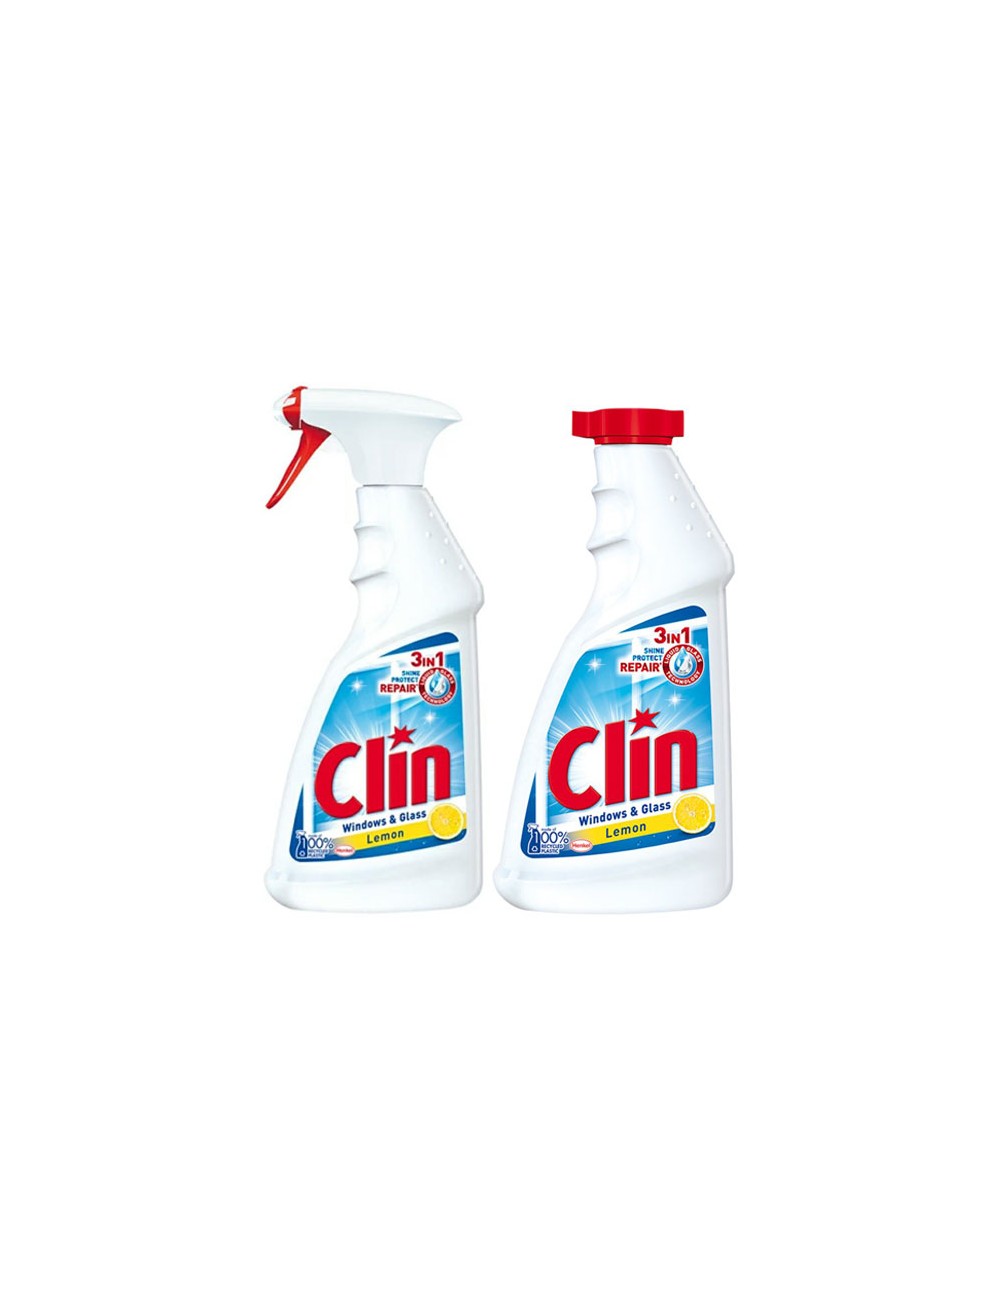 Clin Windows & Glass Citrus  – środek do czyszczenia okien z alkoholem Zestaw ( 1 szt zapas + 1 szt sprawy )